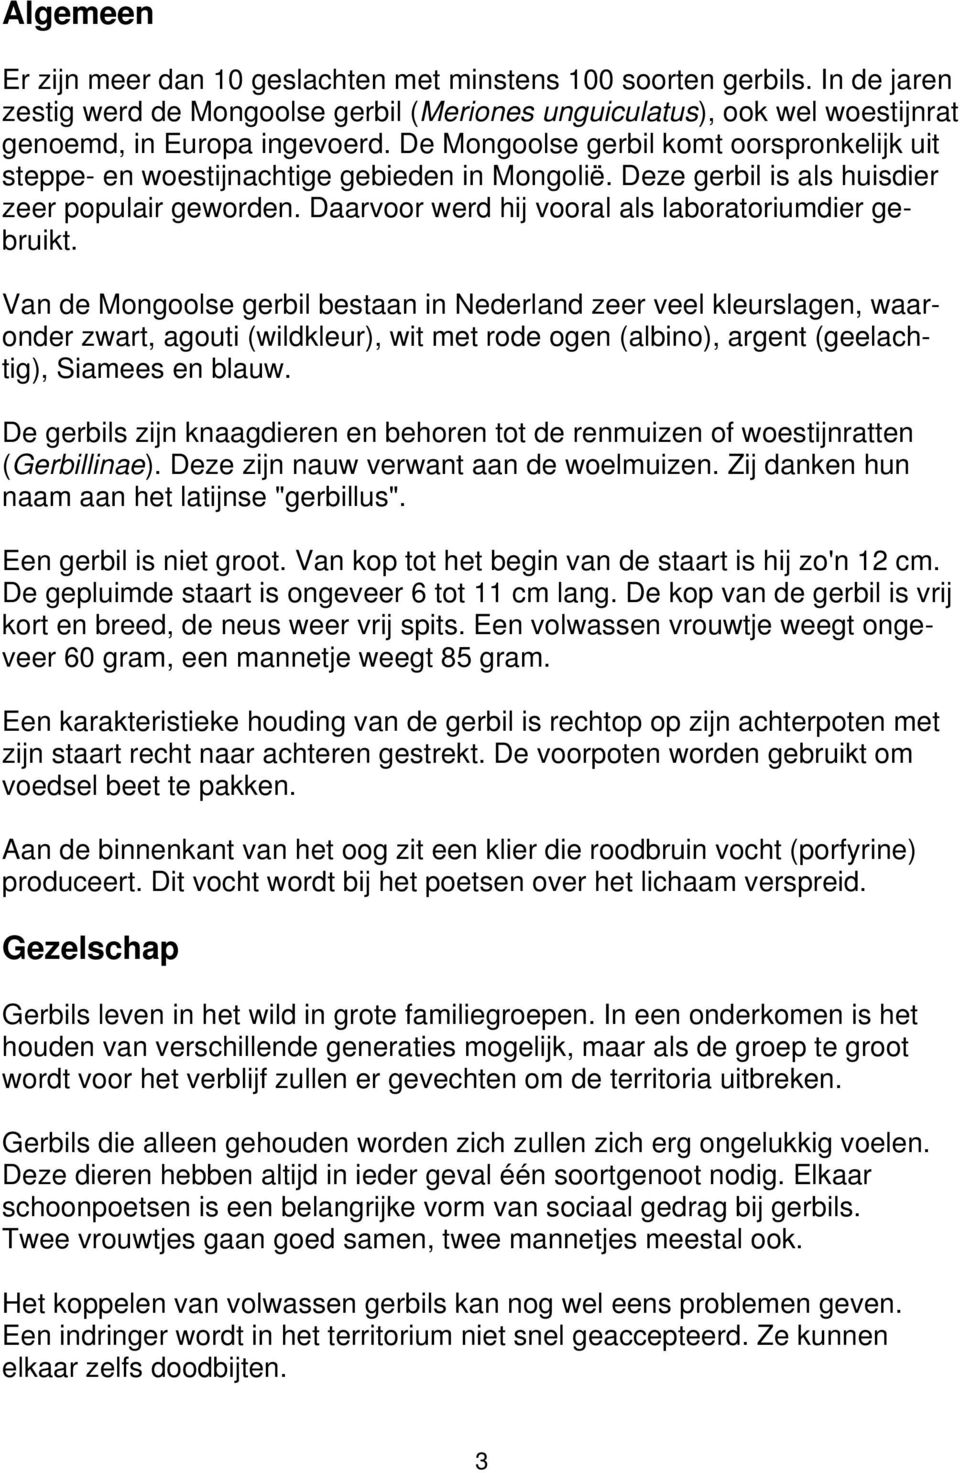 Van de Mongoolse gerbil bestaan in Nederland zeer veel kleurslagen, waaronder zwart, agouti (wildkleur), wit met rode ogen (albino), argent (geelachtig), Siamees en blauw.